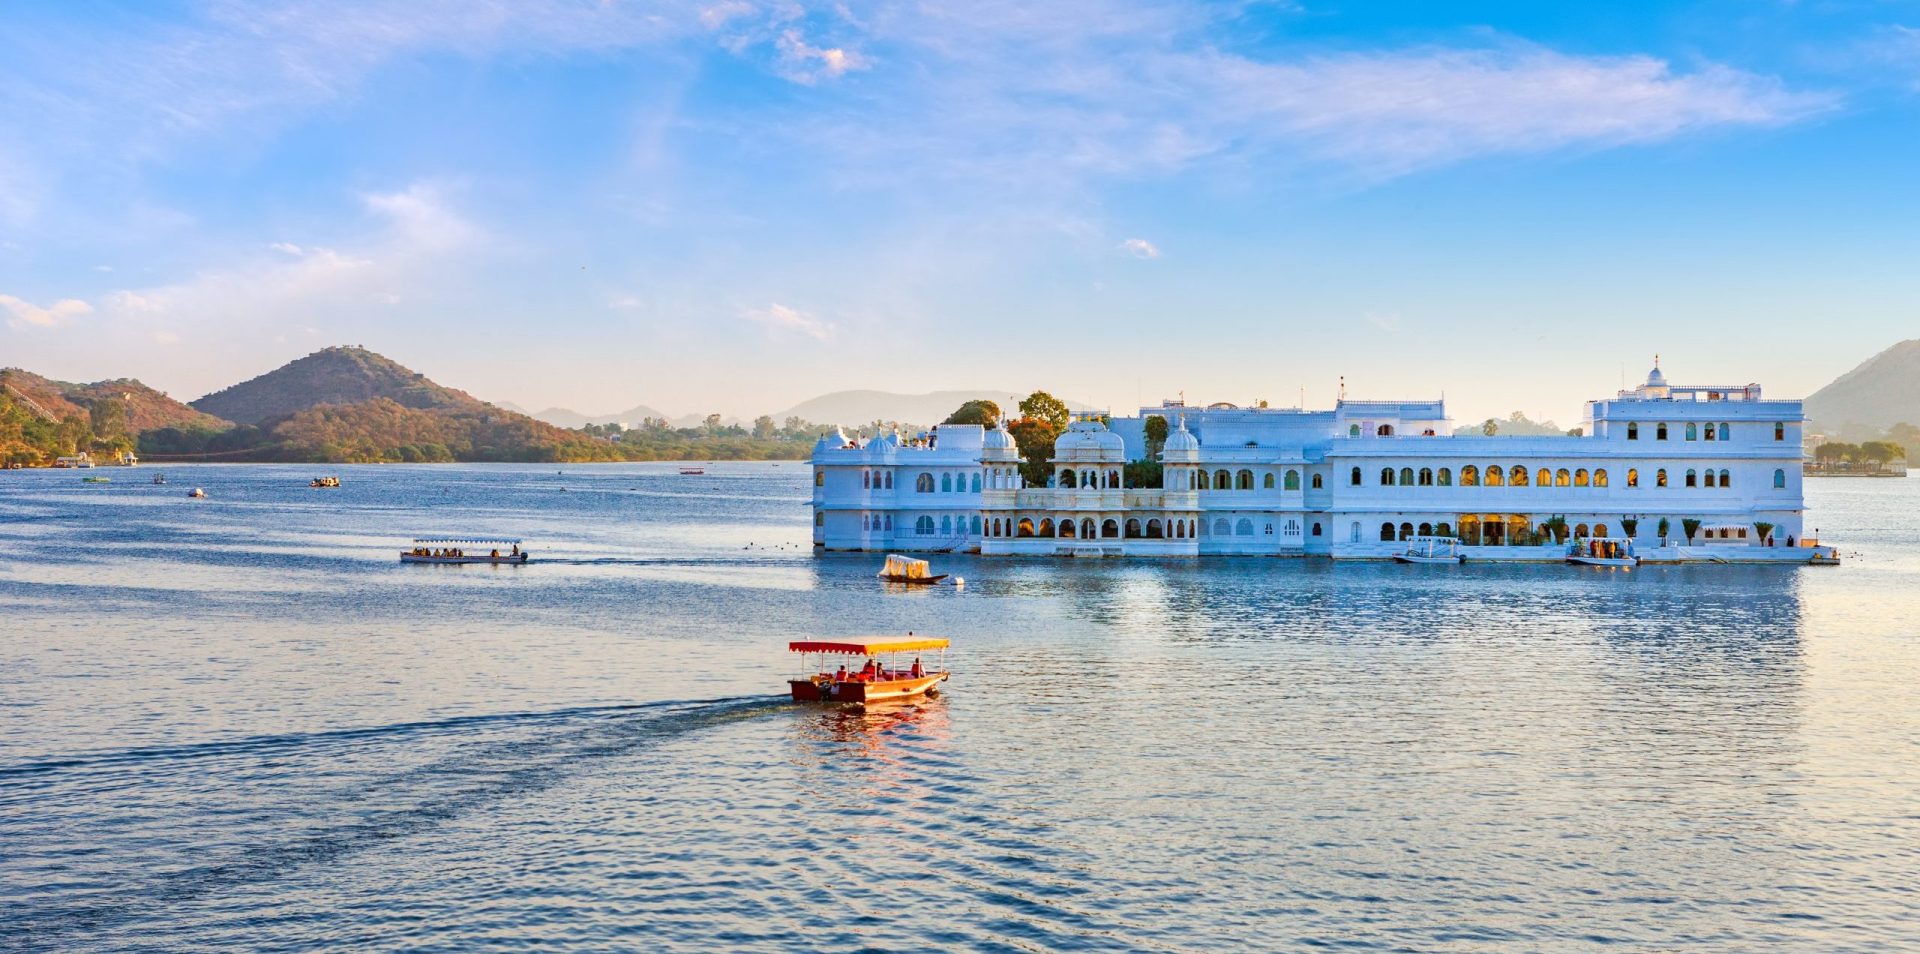 Lake-palace-udaipur